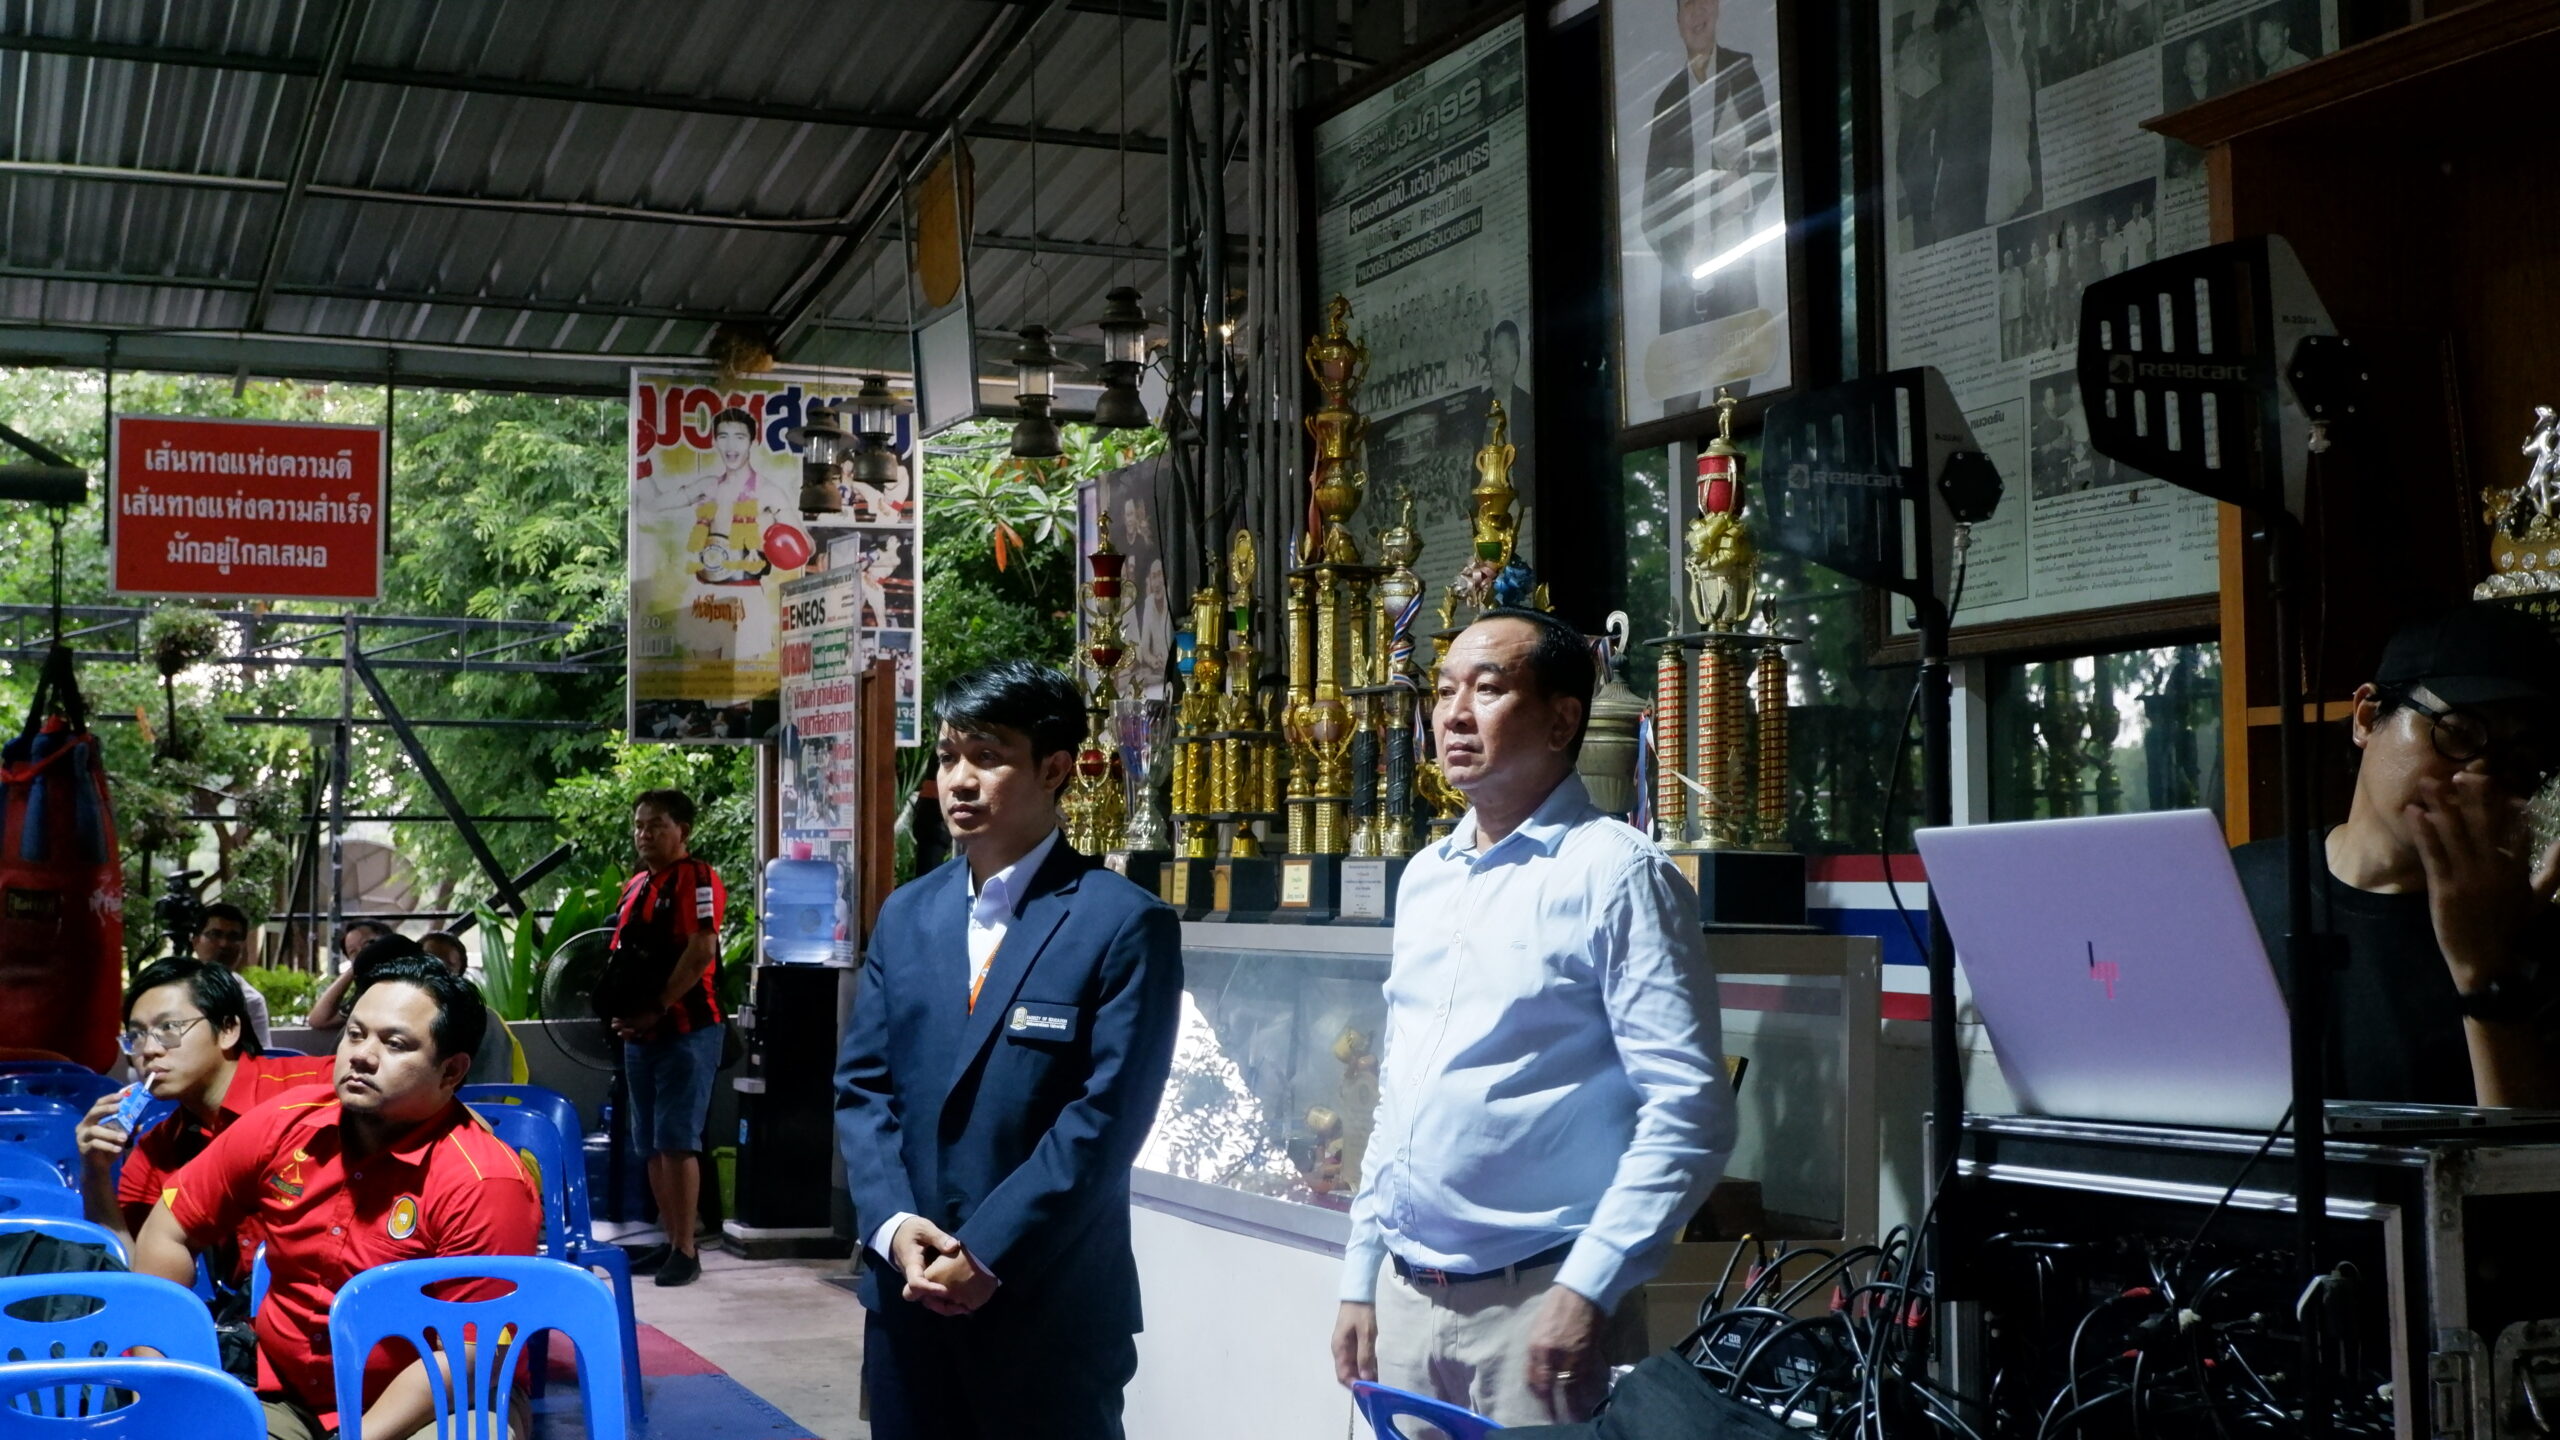 ค่ายมวยดาบรันสารคาม จัดซอฟต์เพาเวอร์มวยไทยให้การประชุมวิชาการนานาชาติ อาเซียน 7 ชาติได้ชม